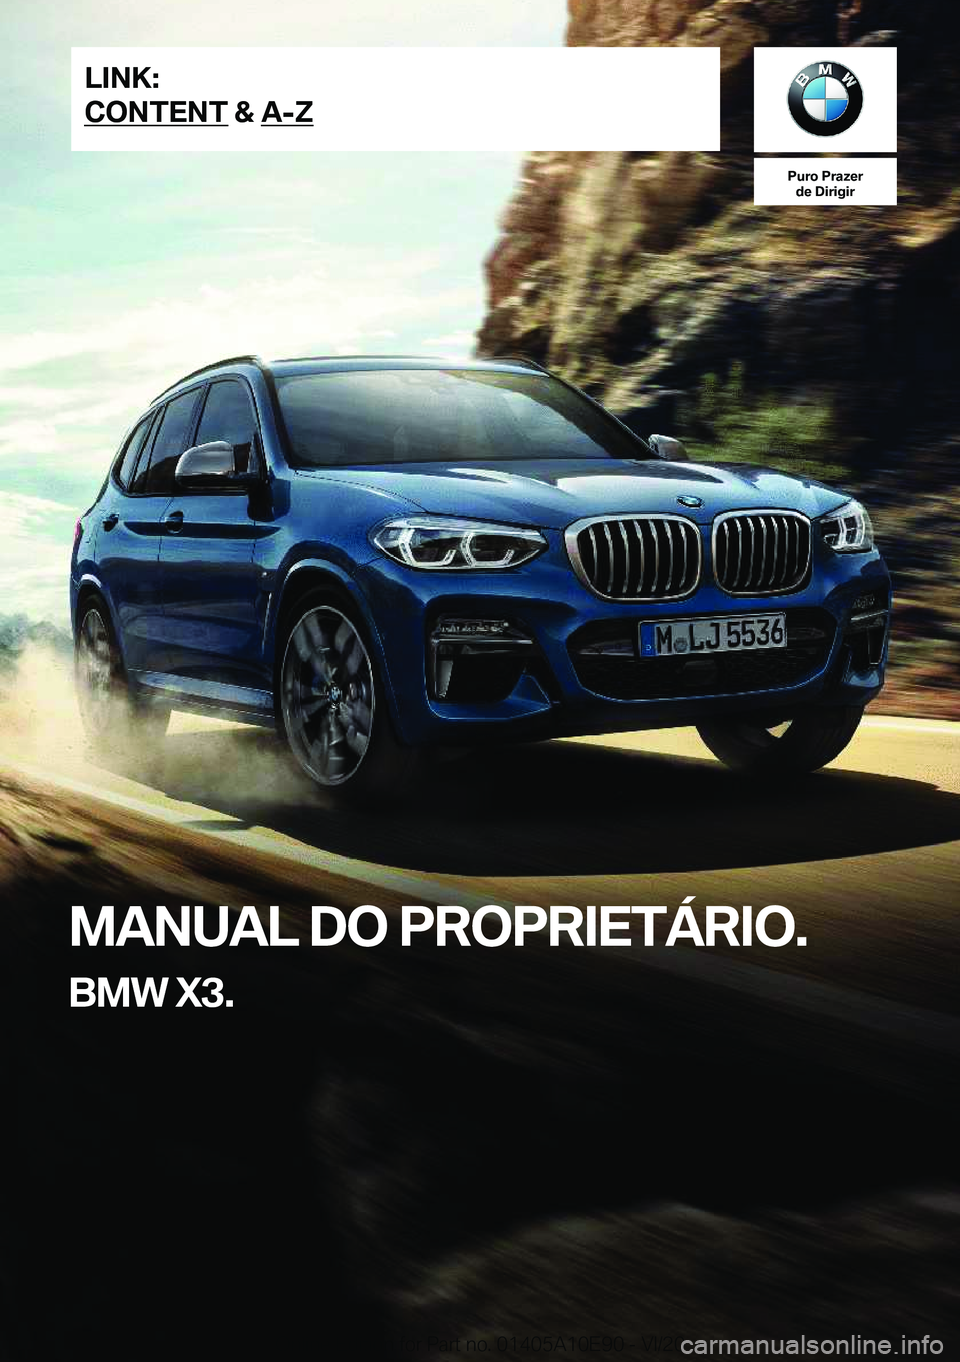 BMW X3 2021  Manual do condutor (in Portuguese) �P�u�r�o��P�r�a�z�e�r�d�e��D�i�r�i�g�i�r
�M�A�N�U�A�L��D�O��P�R�O�P�R�I�E�T�Á�R�I�O�.
�B�M�W��X�3�.�L�I�N�K�:
�C�O�N�T�E�N�T��&��A�-�Z�O�n�l�i�n�e��E�d�i�t�i�o�n��f�o�r��P�a�r�t��n�o�.��0